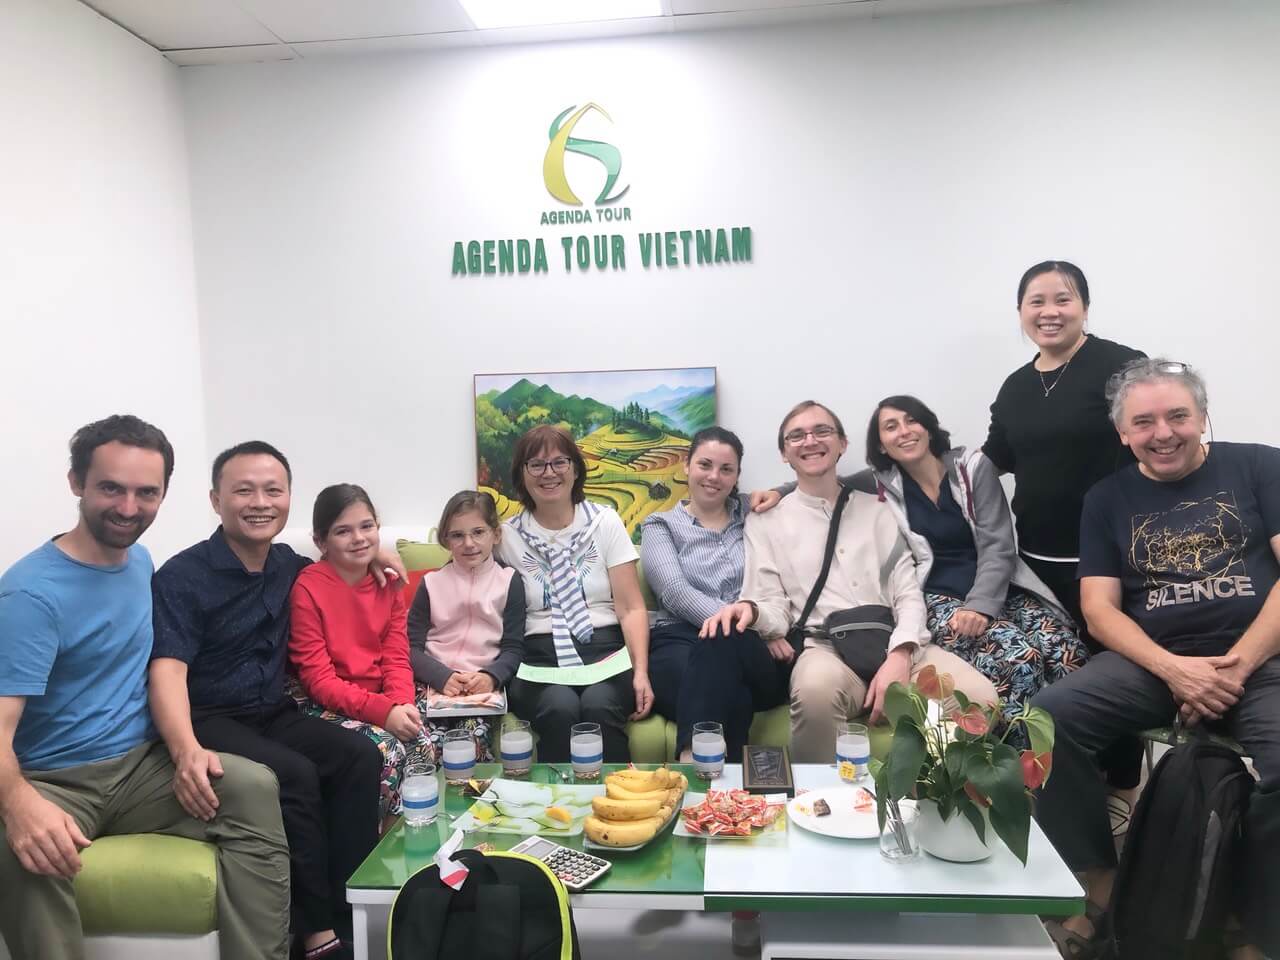 Voyage Vietnam en famille avec Agenda Tour Vietnam